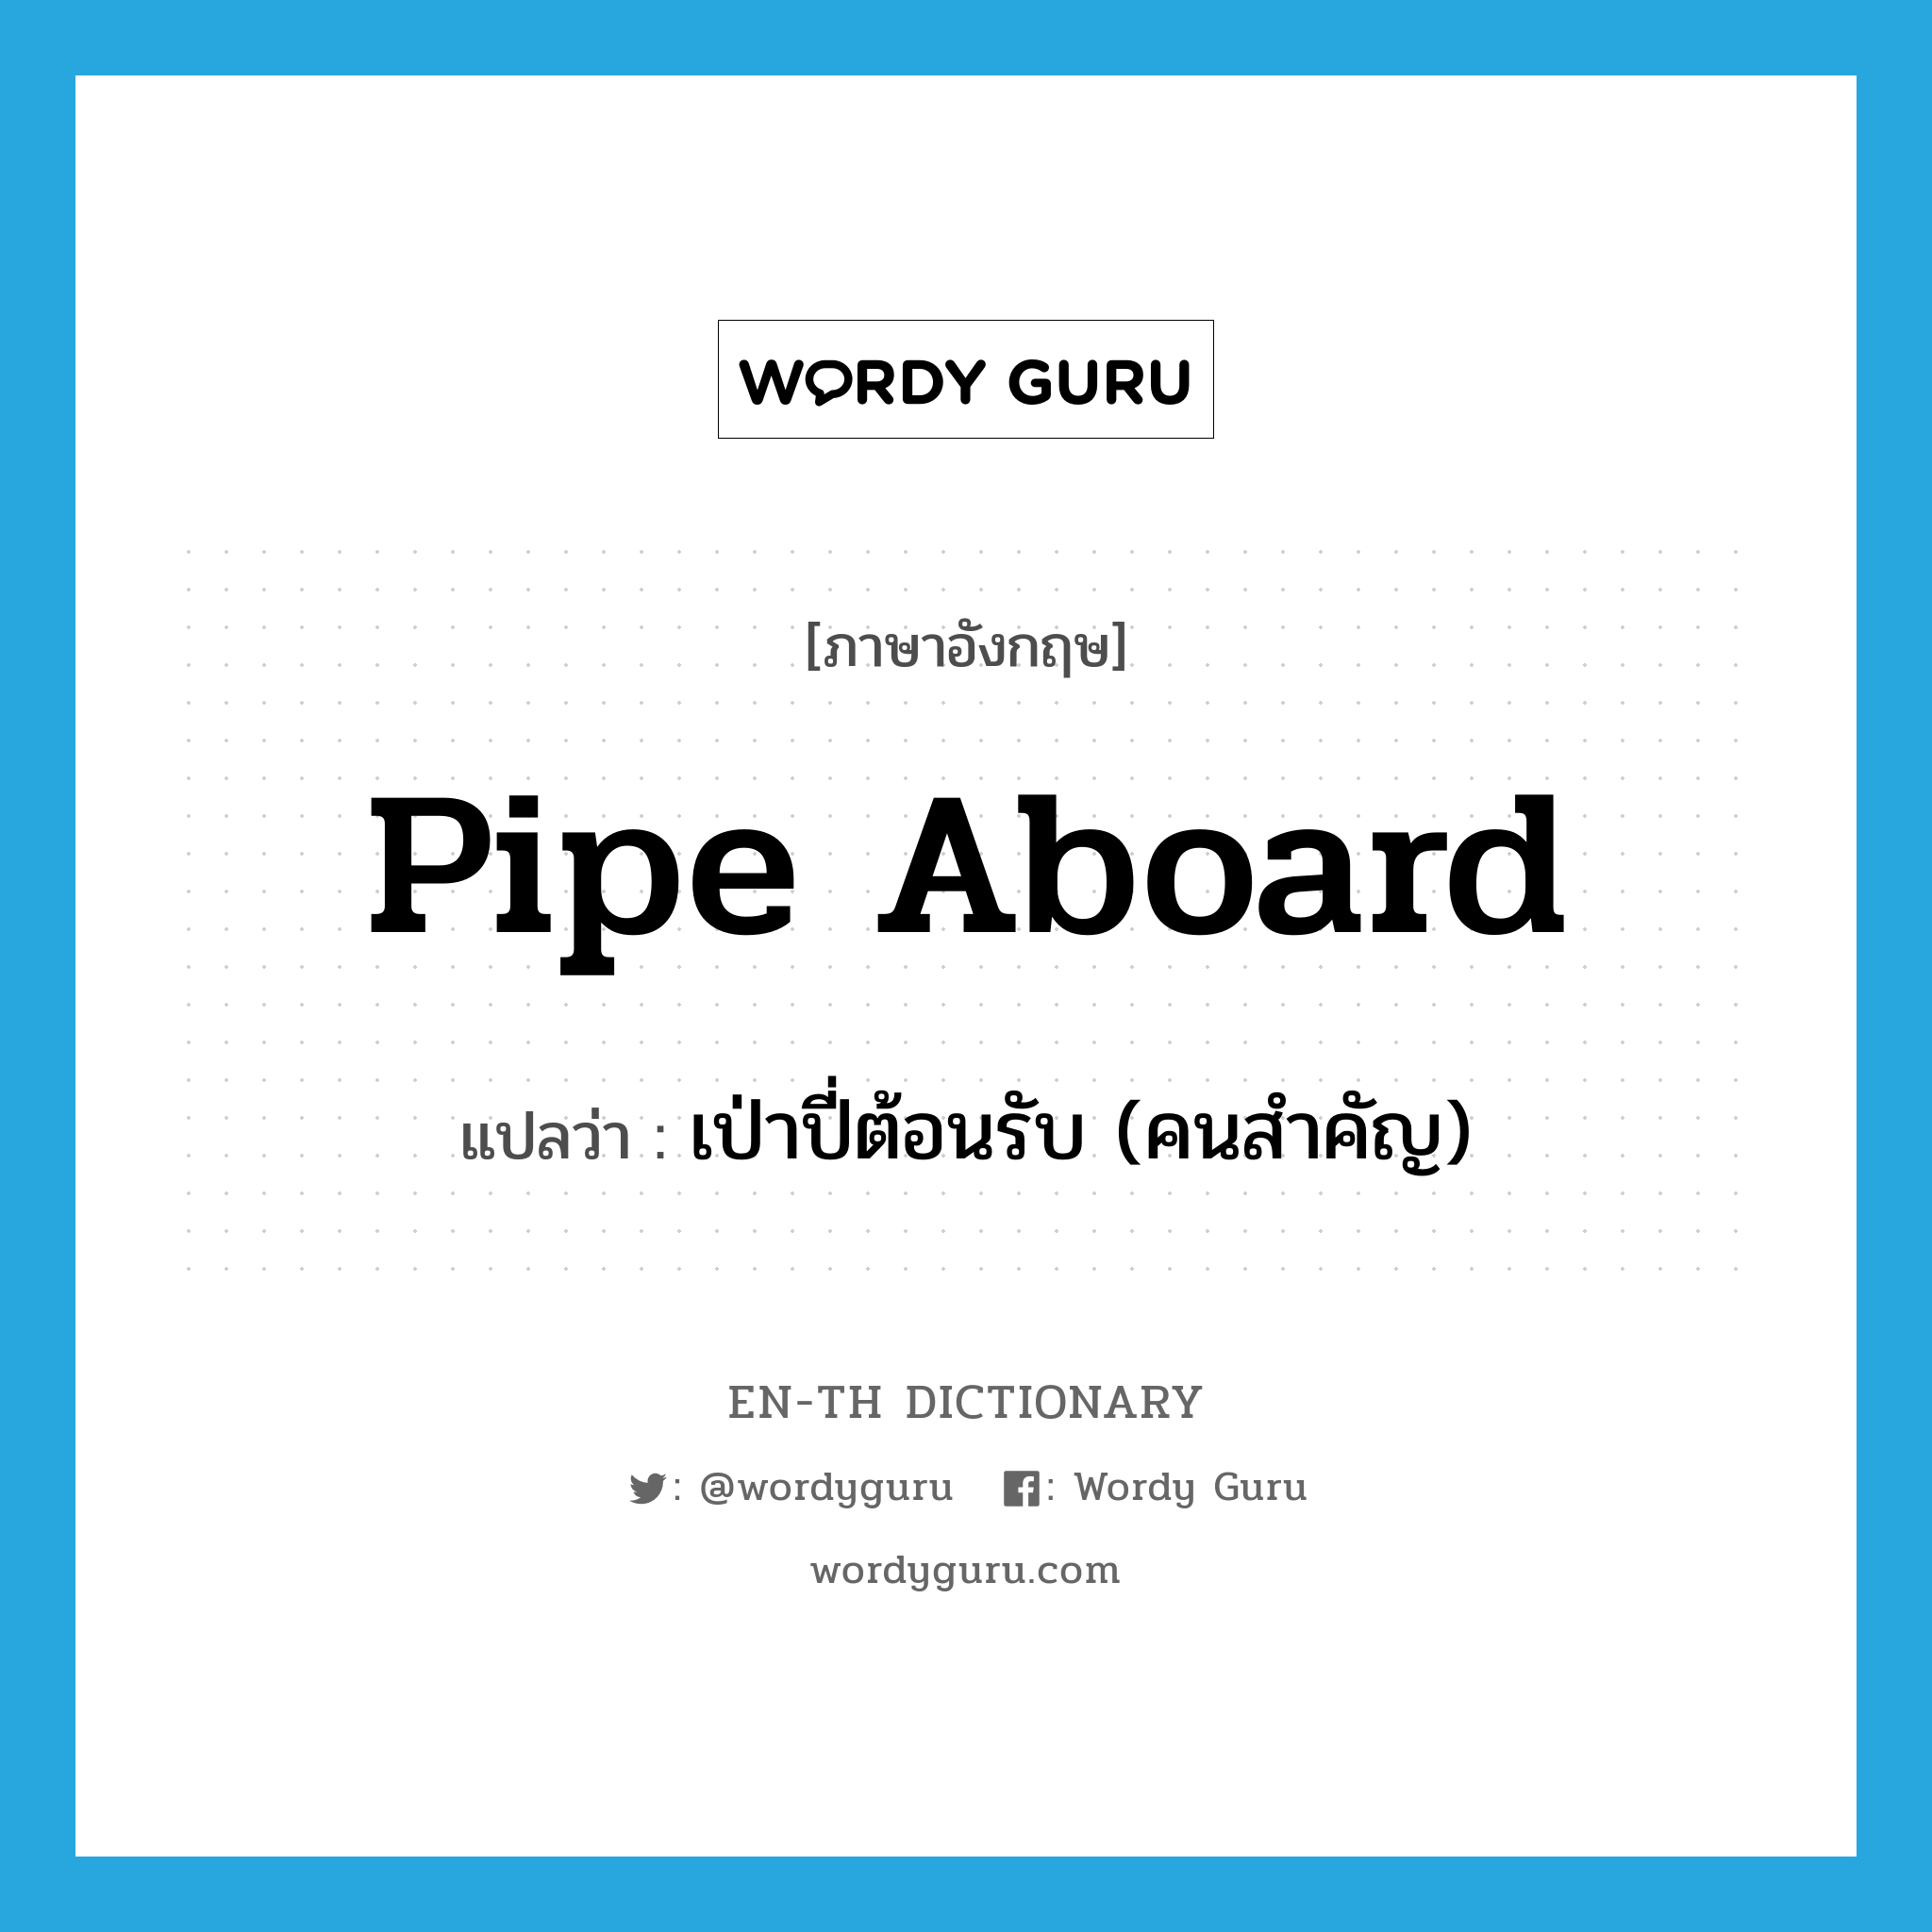 เป่าปี่ต้อนรับ (คนสำคัญ) ภาษาอังกฤษ?, คำศัพท์ภาษาอังกฤษ เป่าปี่ต้อนรับ (คนสำคัญ) แปลว่า pipe aboard ประเภท PHRV หมวด PHRV